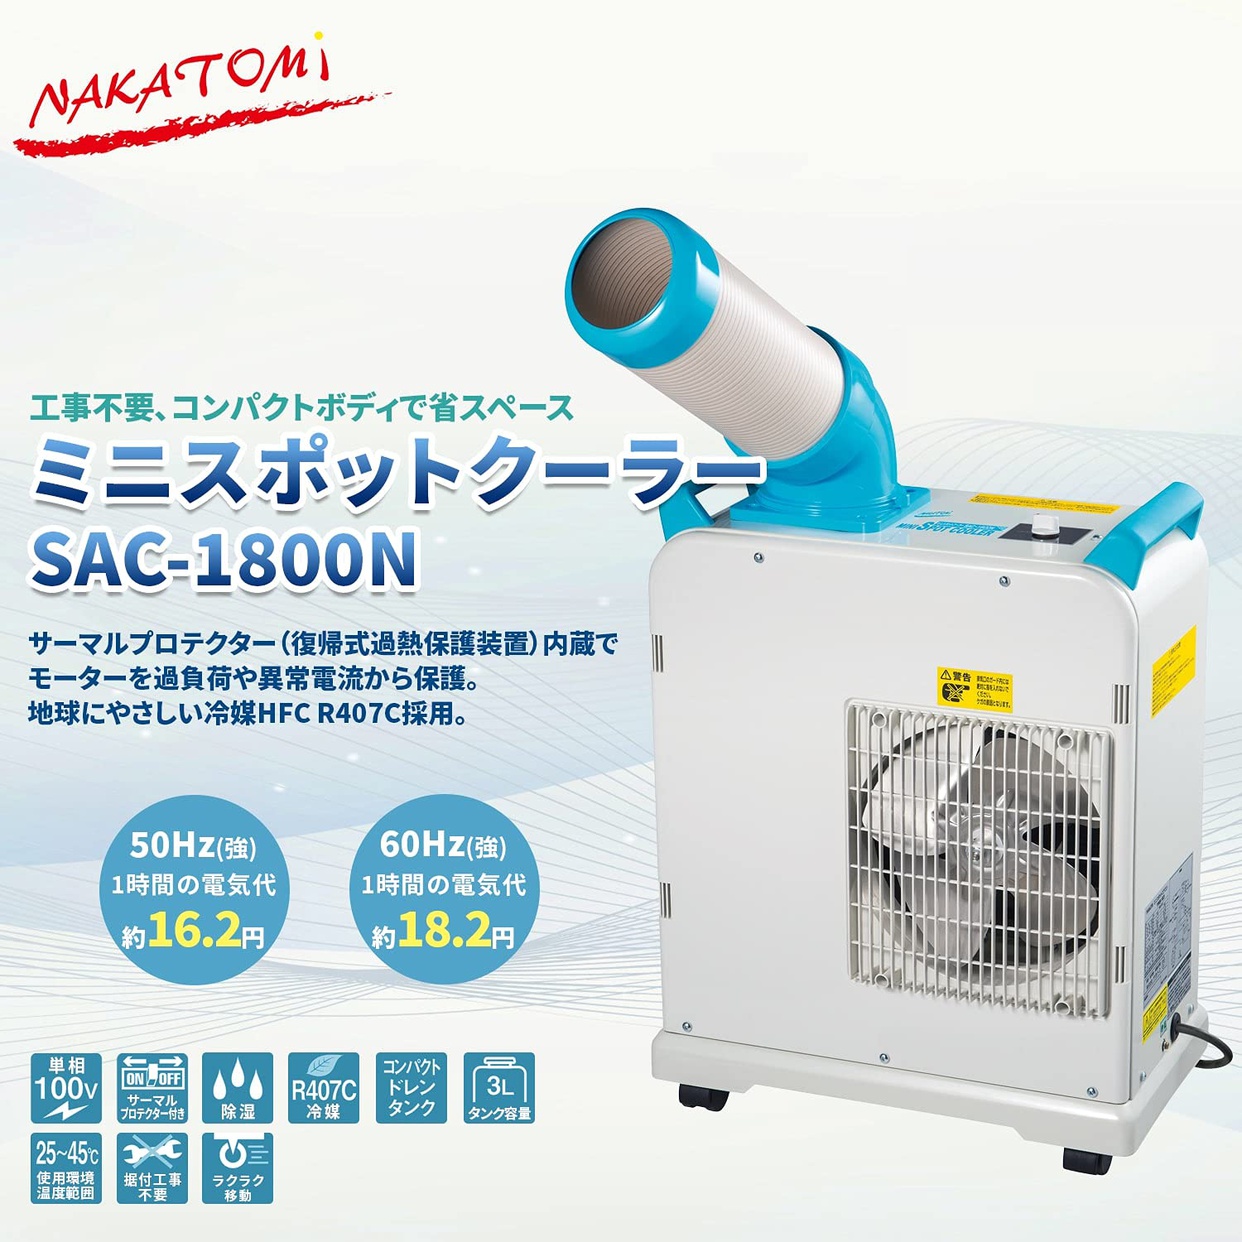 NAKATOMI(ナカトミ) ミニスポットクーラー SAC-1800Nの商品画像2 